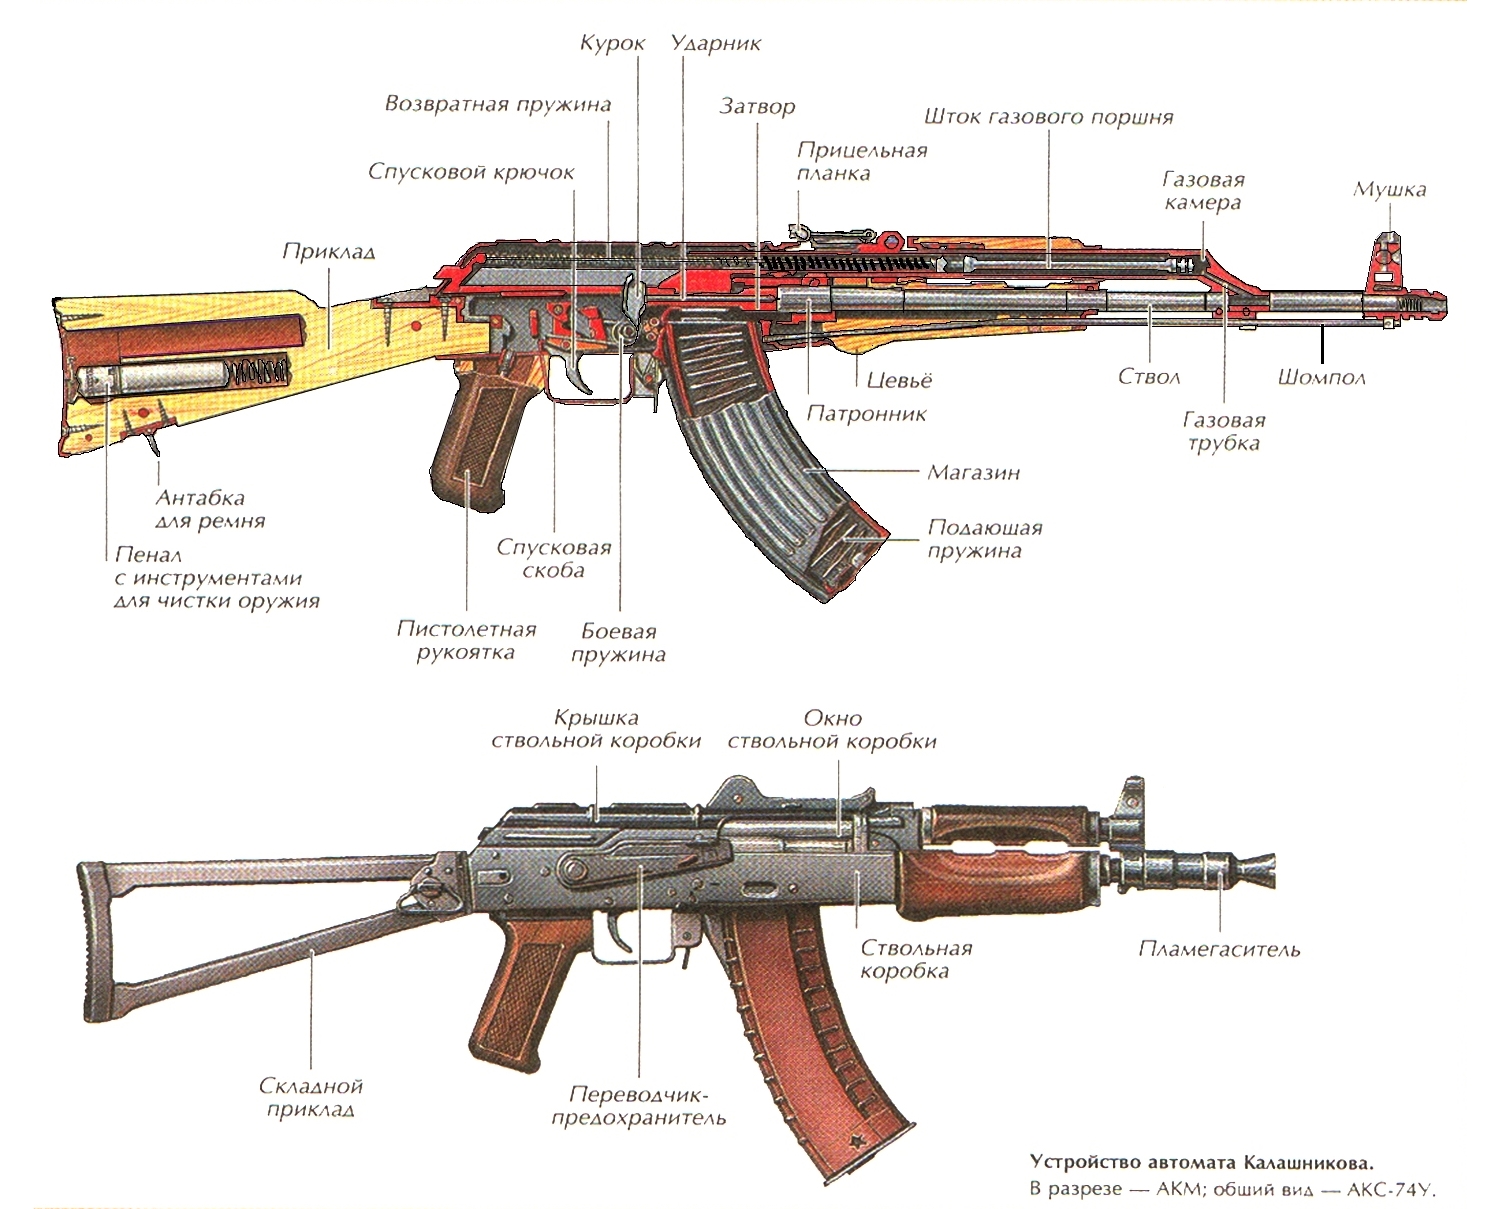 Автомат Калашникова АК-47 / АКС-47 оружие